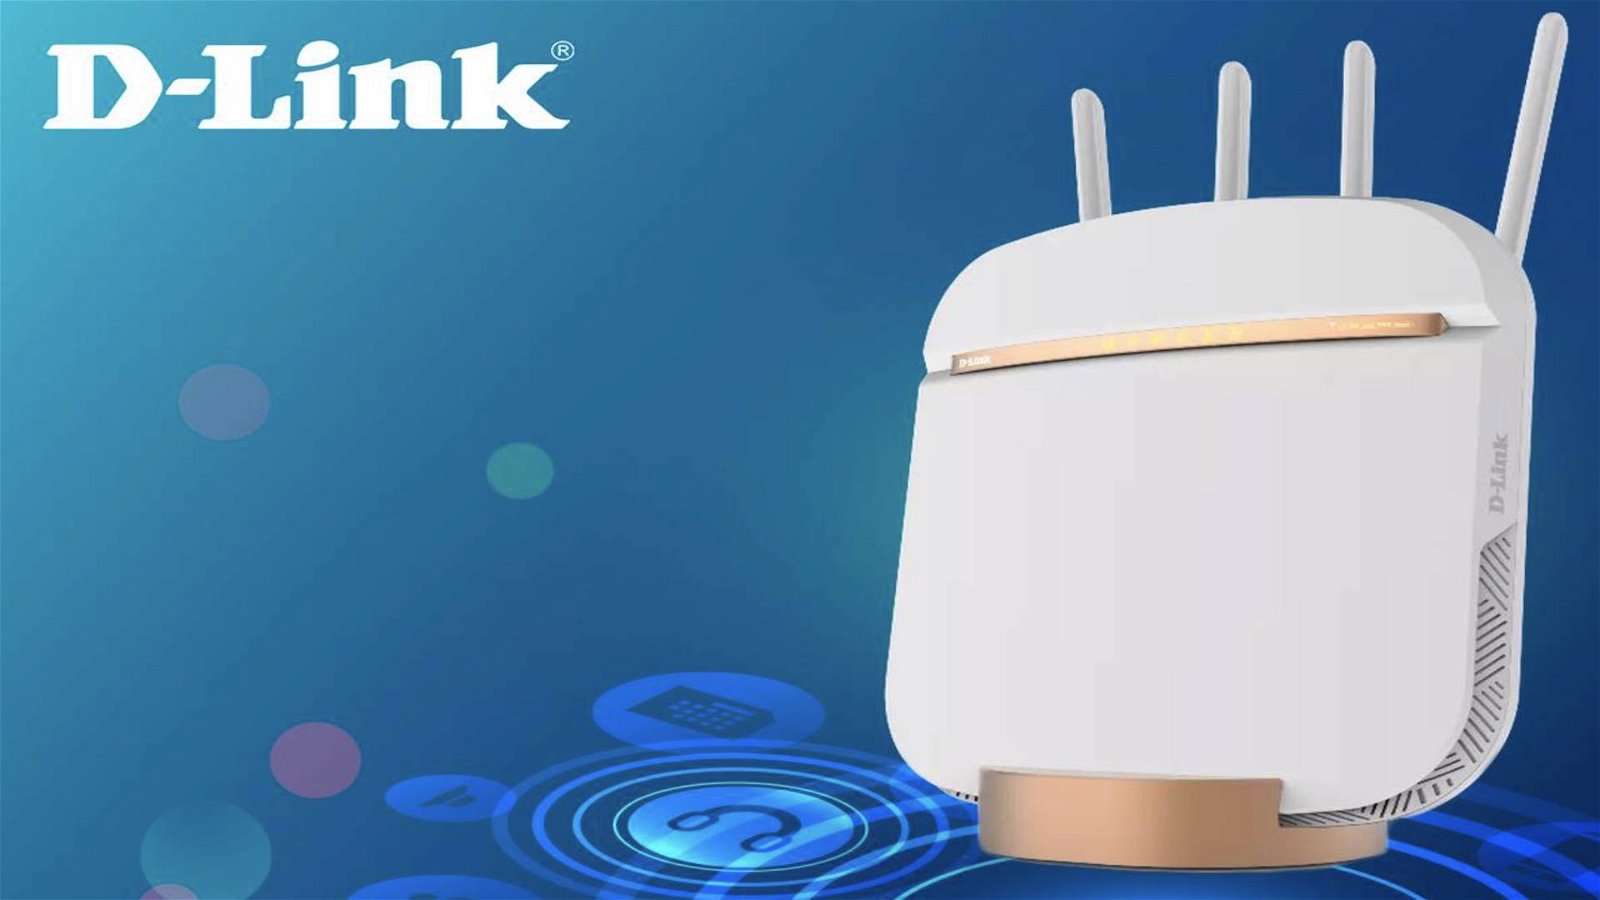 Immagine di D-Link DWR-2010 5G, router ibrido per l'ultra-broadband mobile e residenziale